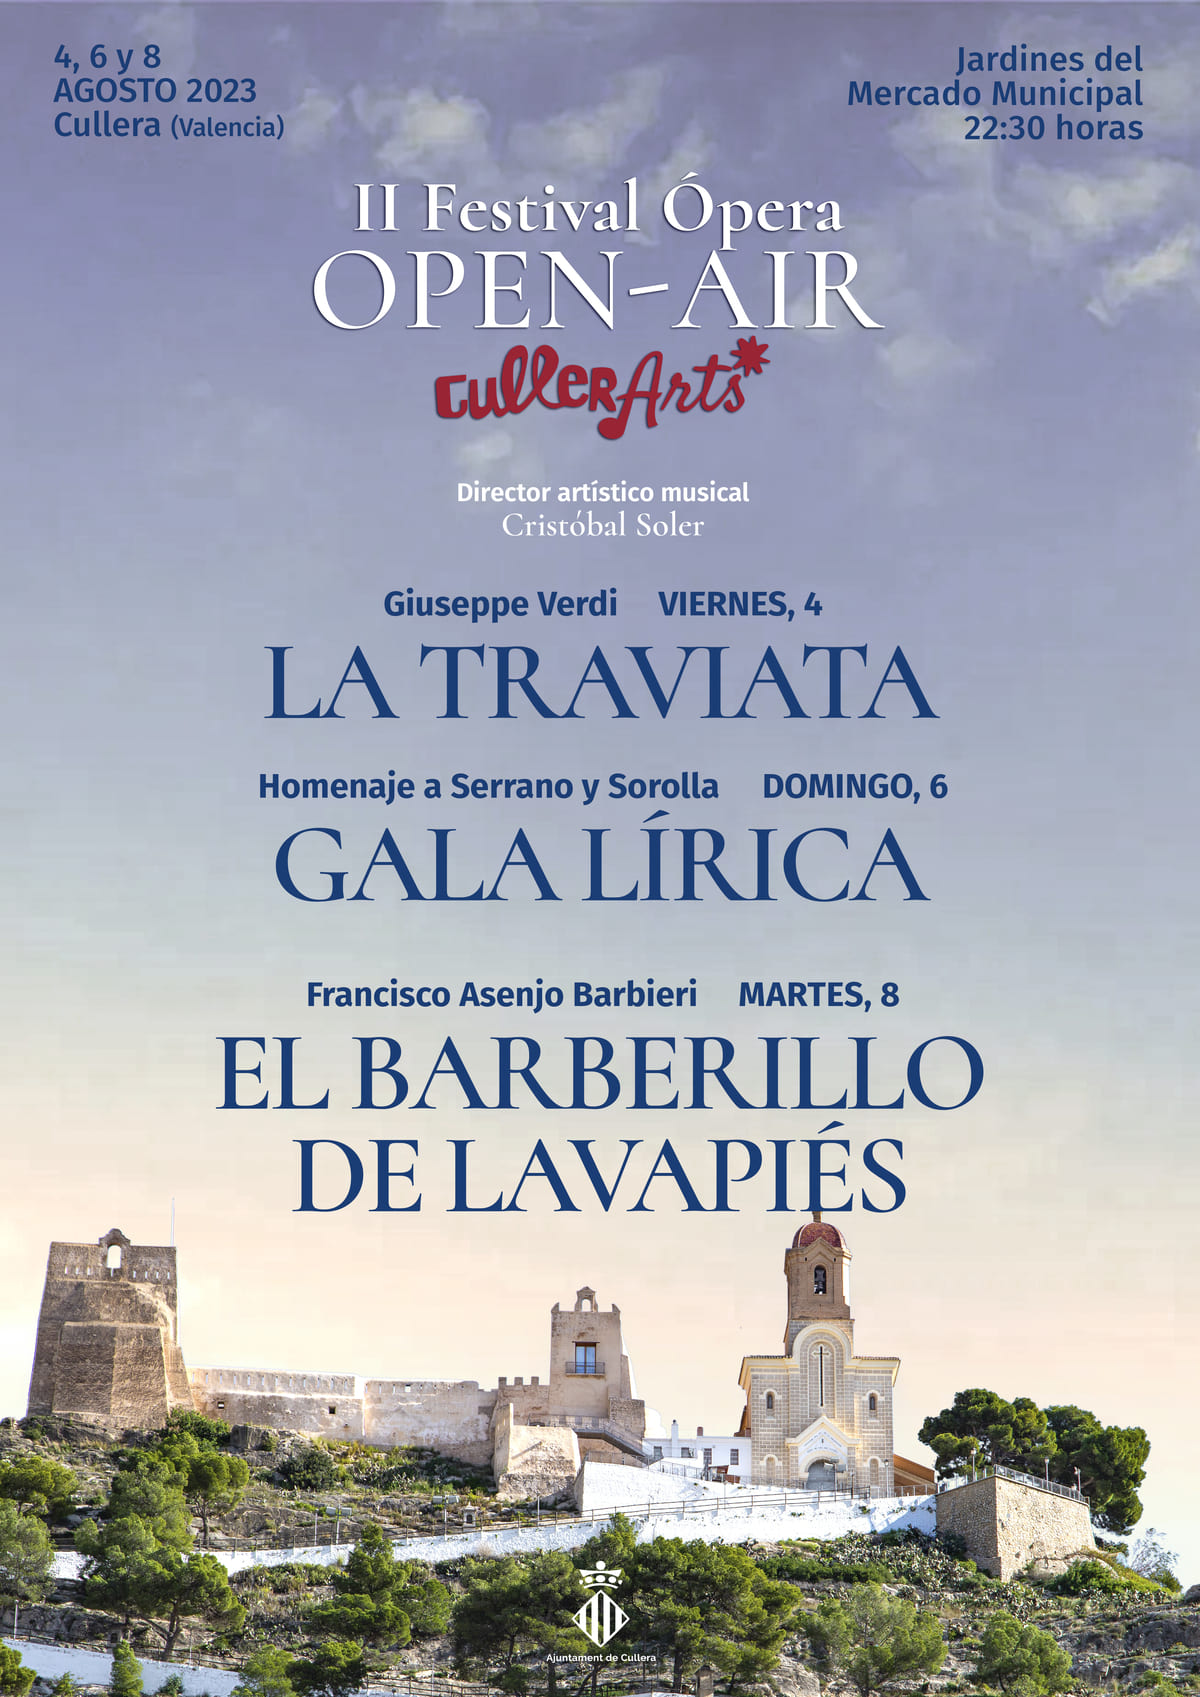 Ópera Open - Air Cullerarts 2023